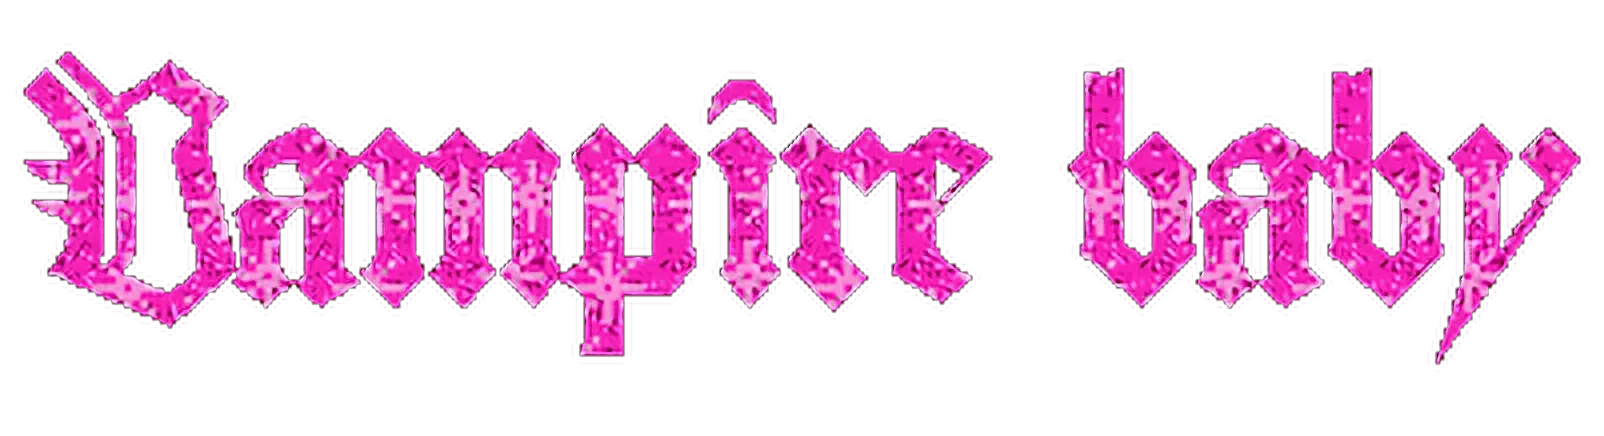 grunge edgy goth gothic punk pink Sticker by jadelevv